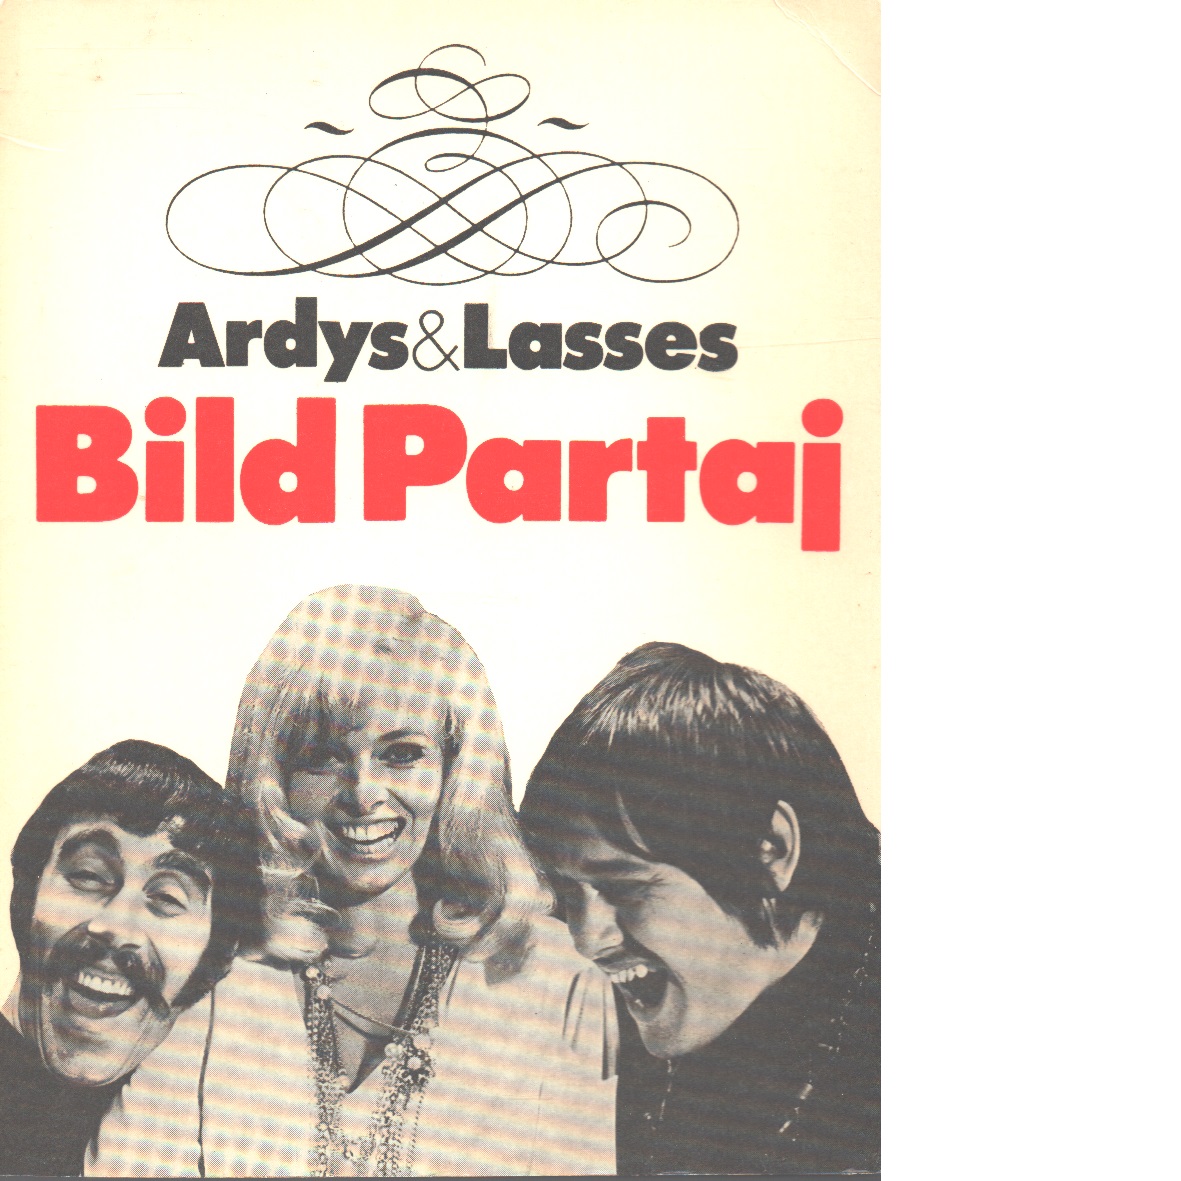 Ardys & Lasses bild partaj - Strüwer, Ardy Och Åberg, Lasse